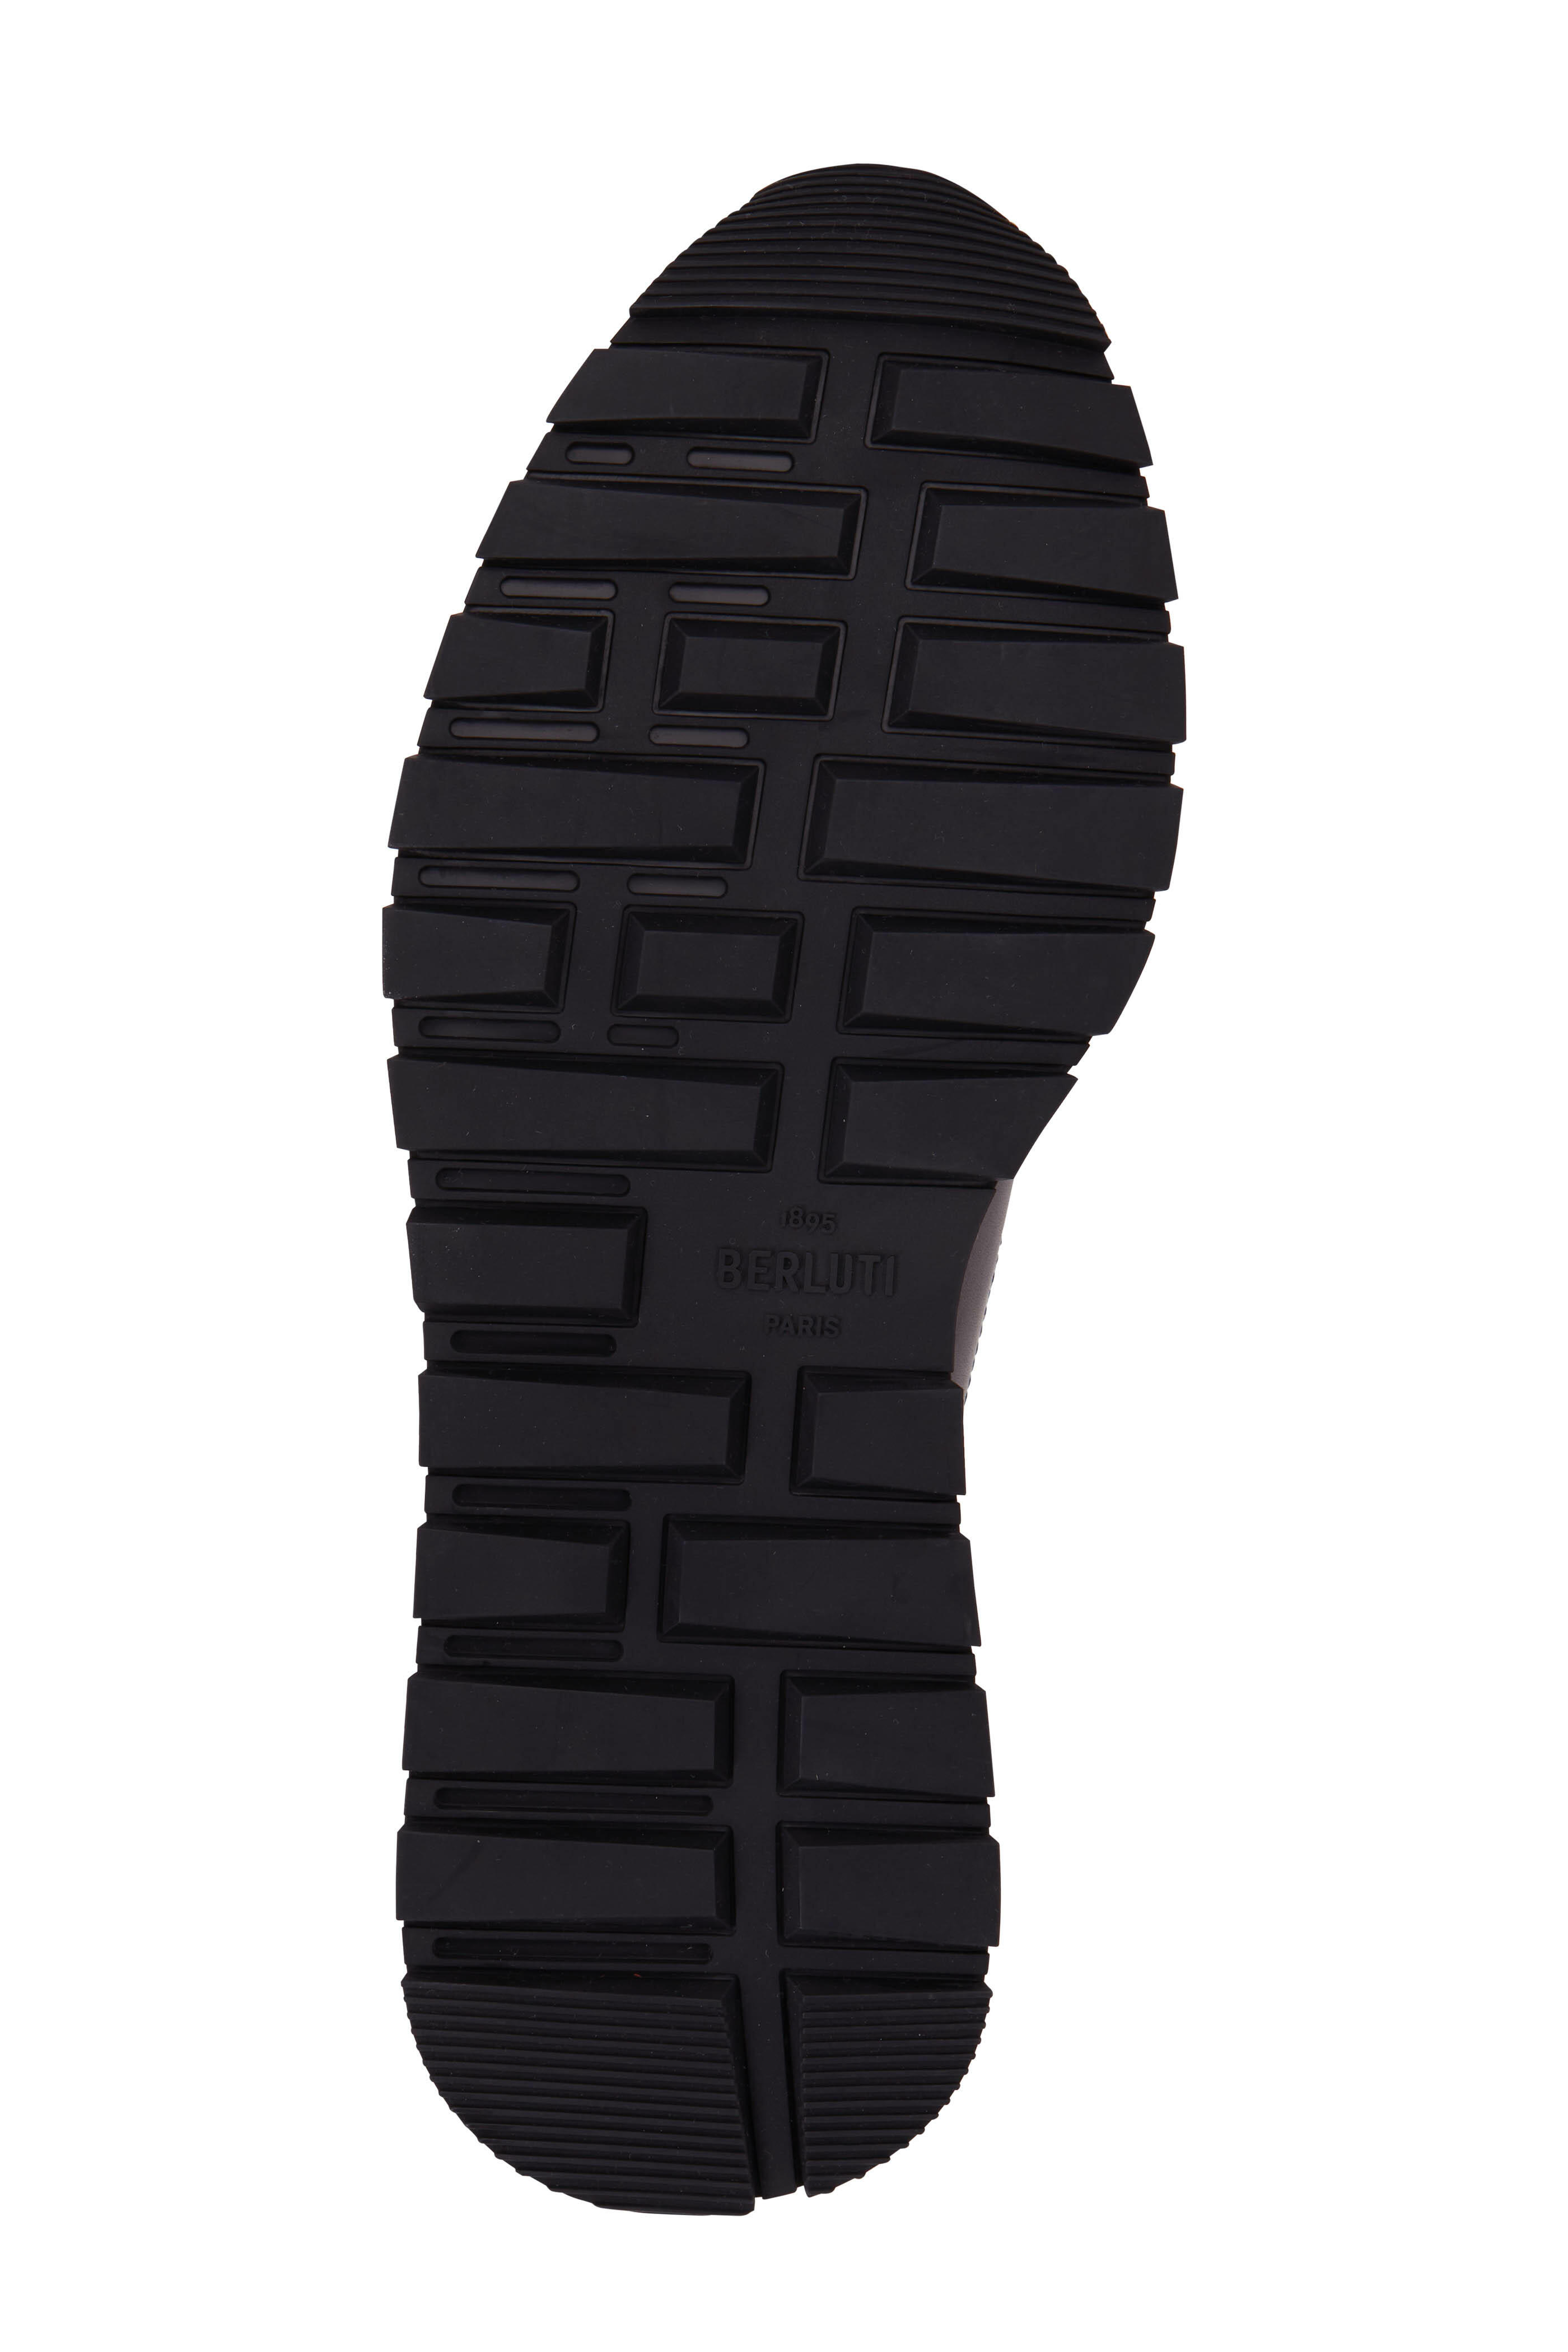 Berluti - Fast Track Nero Grigio Leather Sneaker